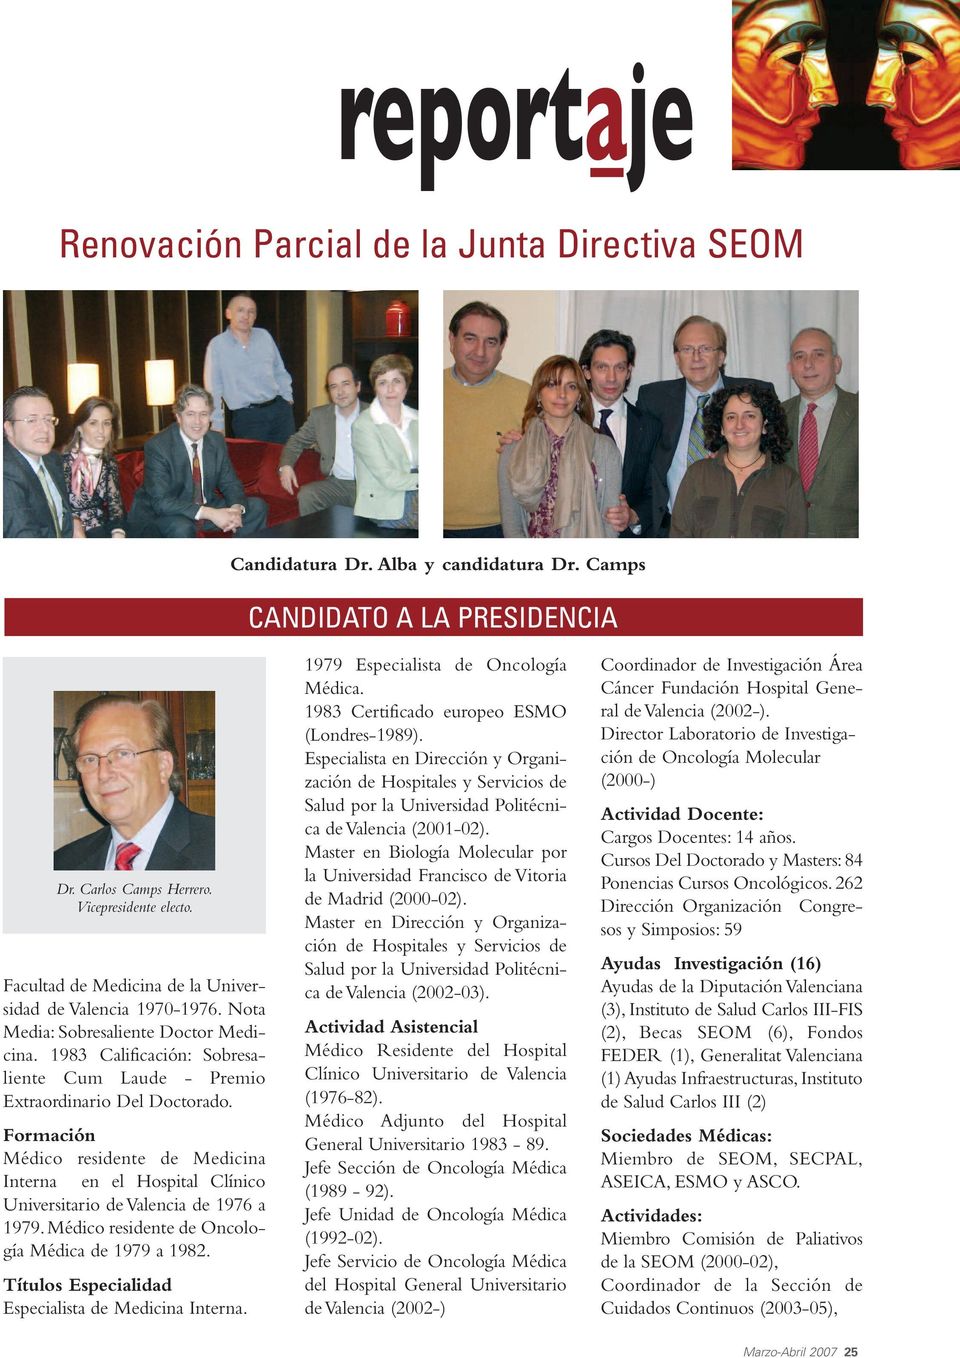 Formación Médico residente de Medicina Interna en el Hospital Clínico Universitario de Valencia de 1976 a 1979. Médico residente de Oncología Médica de 1979 a 1982.